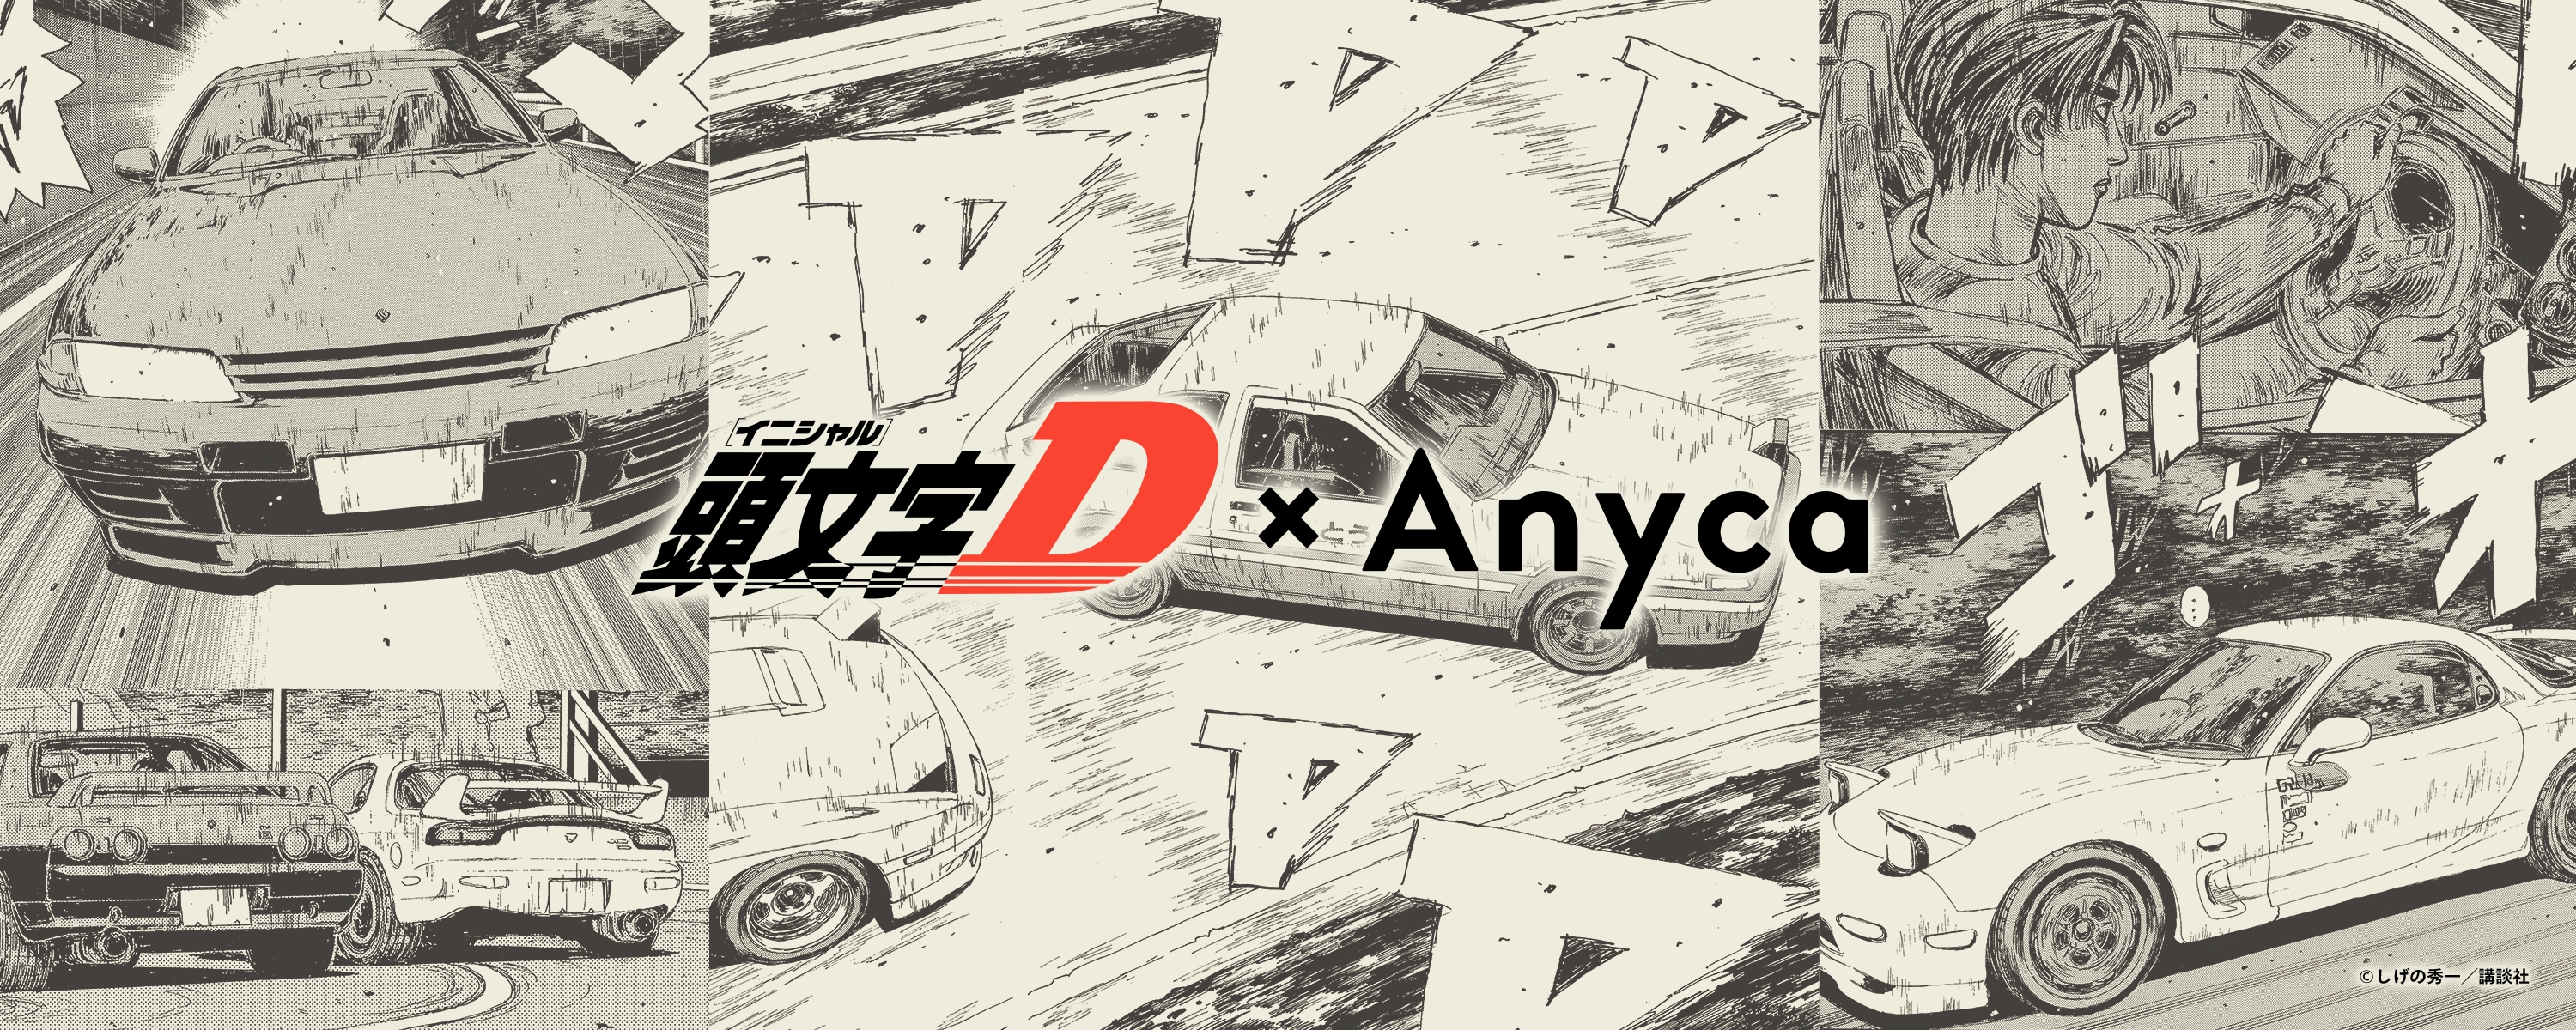 漫画に登場した憧れの名車乗れる 頭文字d Anyca サーキットfes を開催 Denaのプレスリリース